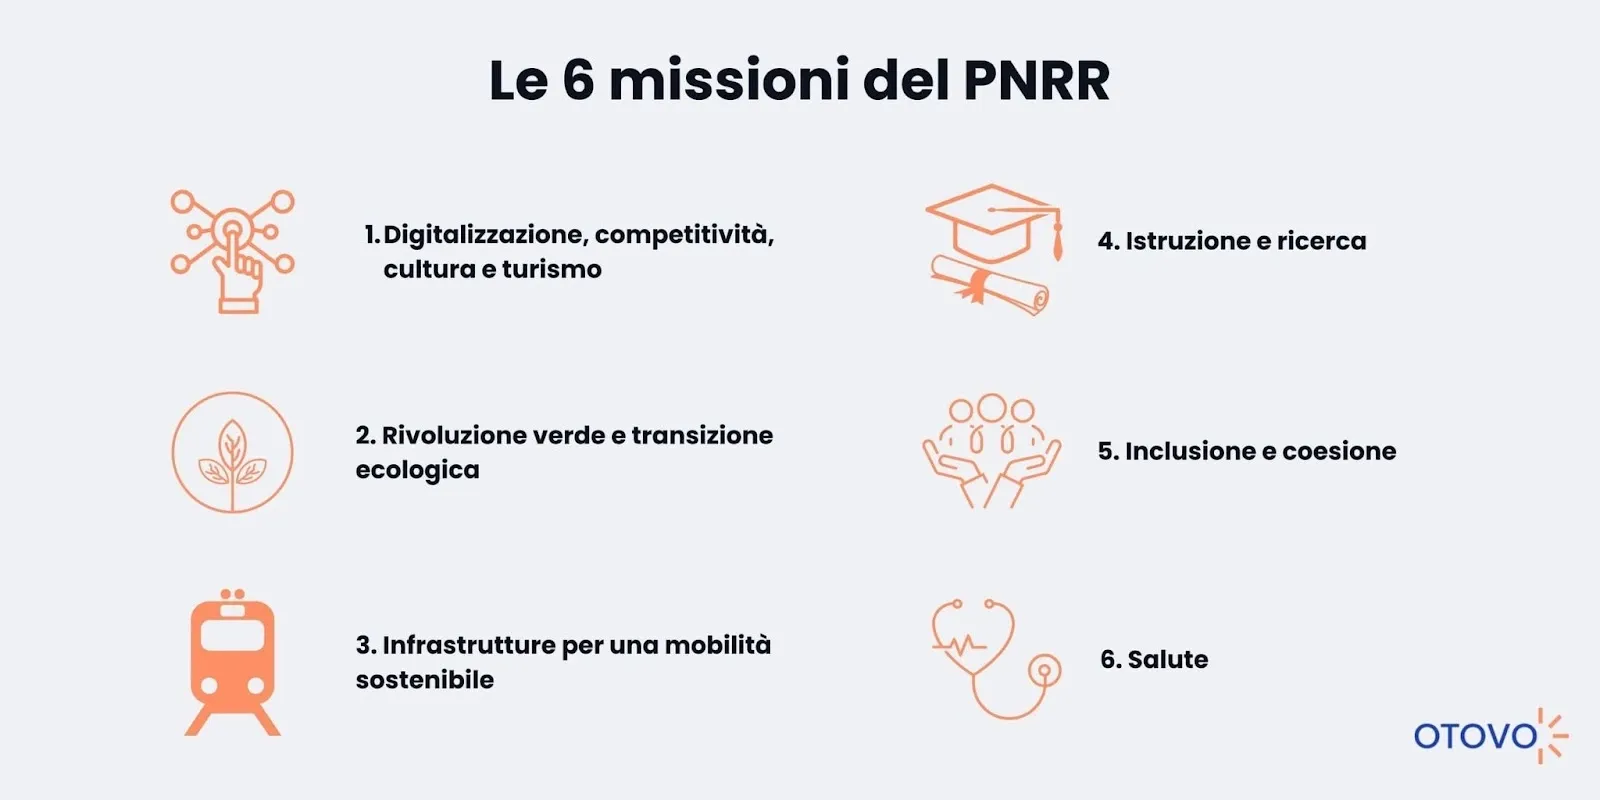 Le 6 missioni del PNRR